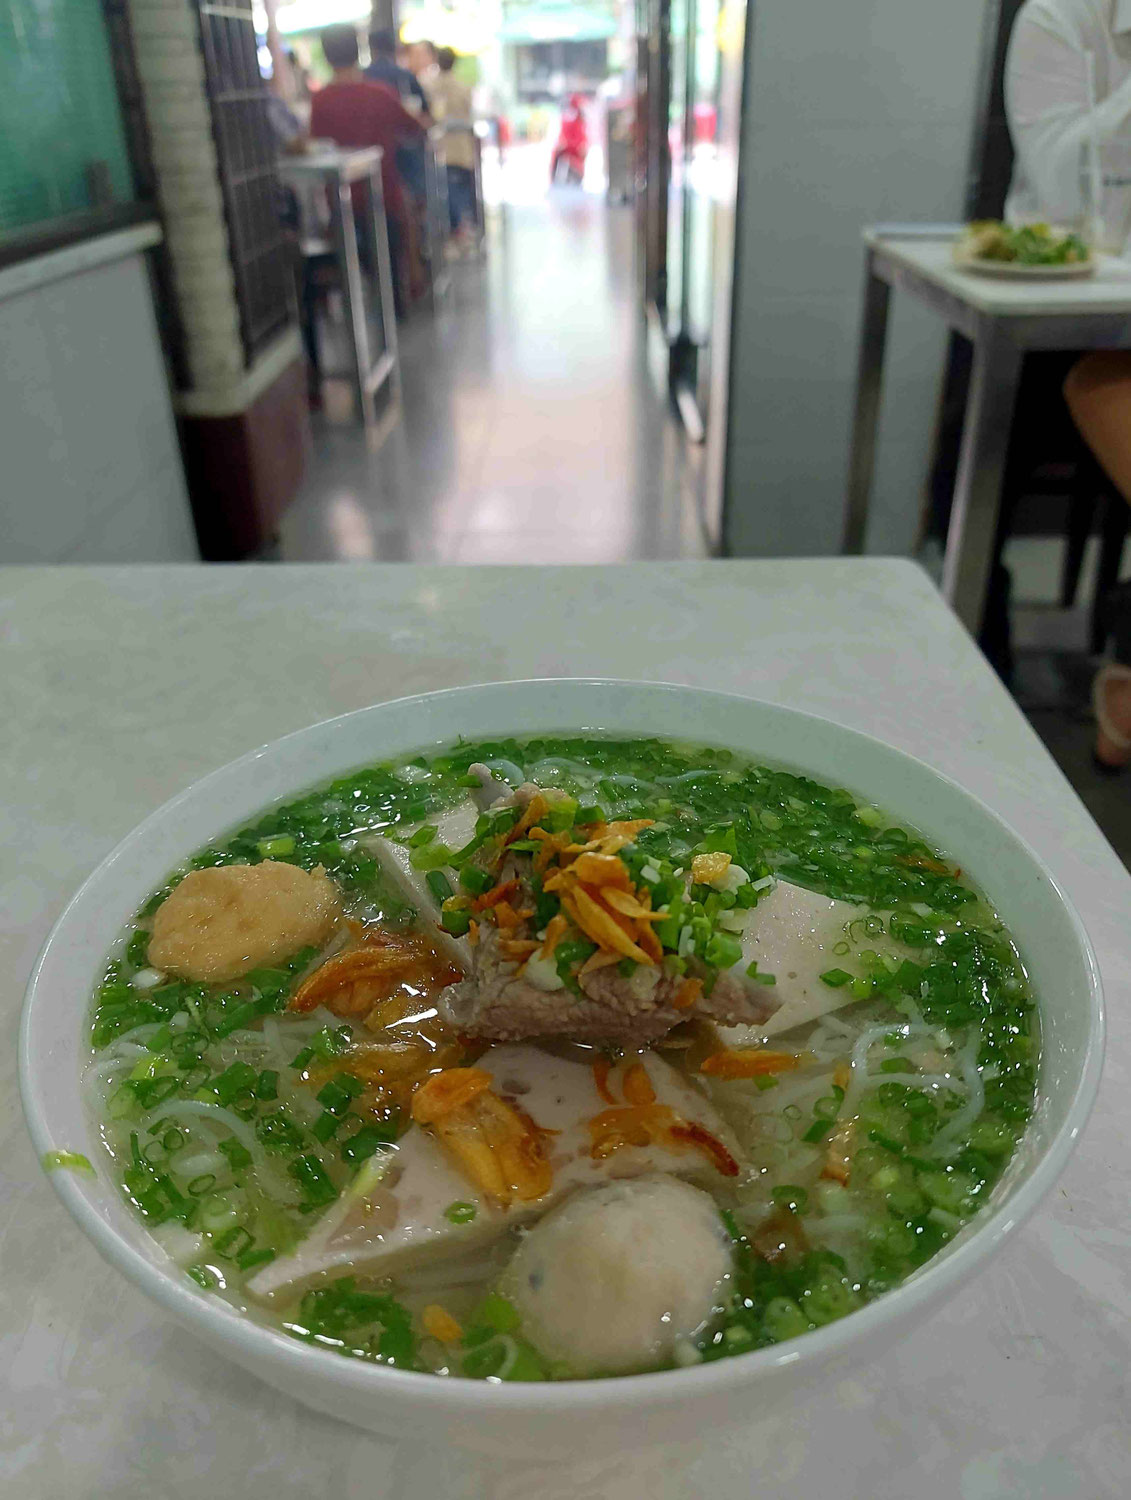 ベトナム人に「ベトナム料理は何が好きですか？」と尋ねられ「HU TIEU」と答えると、だいたい「PHOはどうですか？」と重ねて質問され「細い麺が好きなのでBUN RIEUの方が好き」と返していたが実はよく食べていたのはBUN MOCだとようやく気付いたが、BUN RIEUとBUN MOCの違いはまだ分かっていない